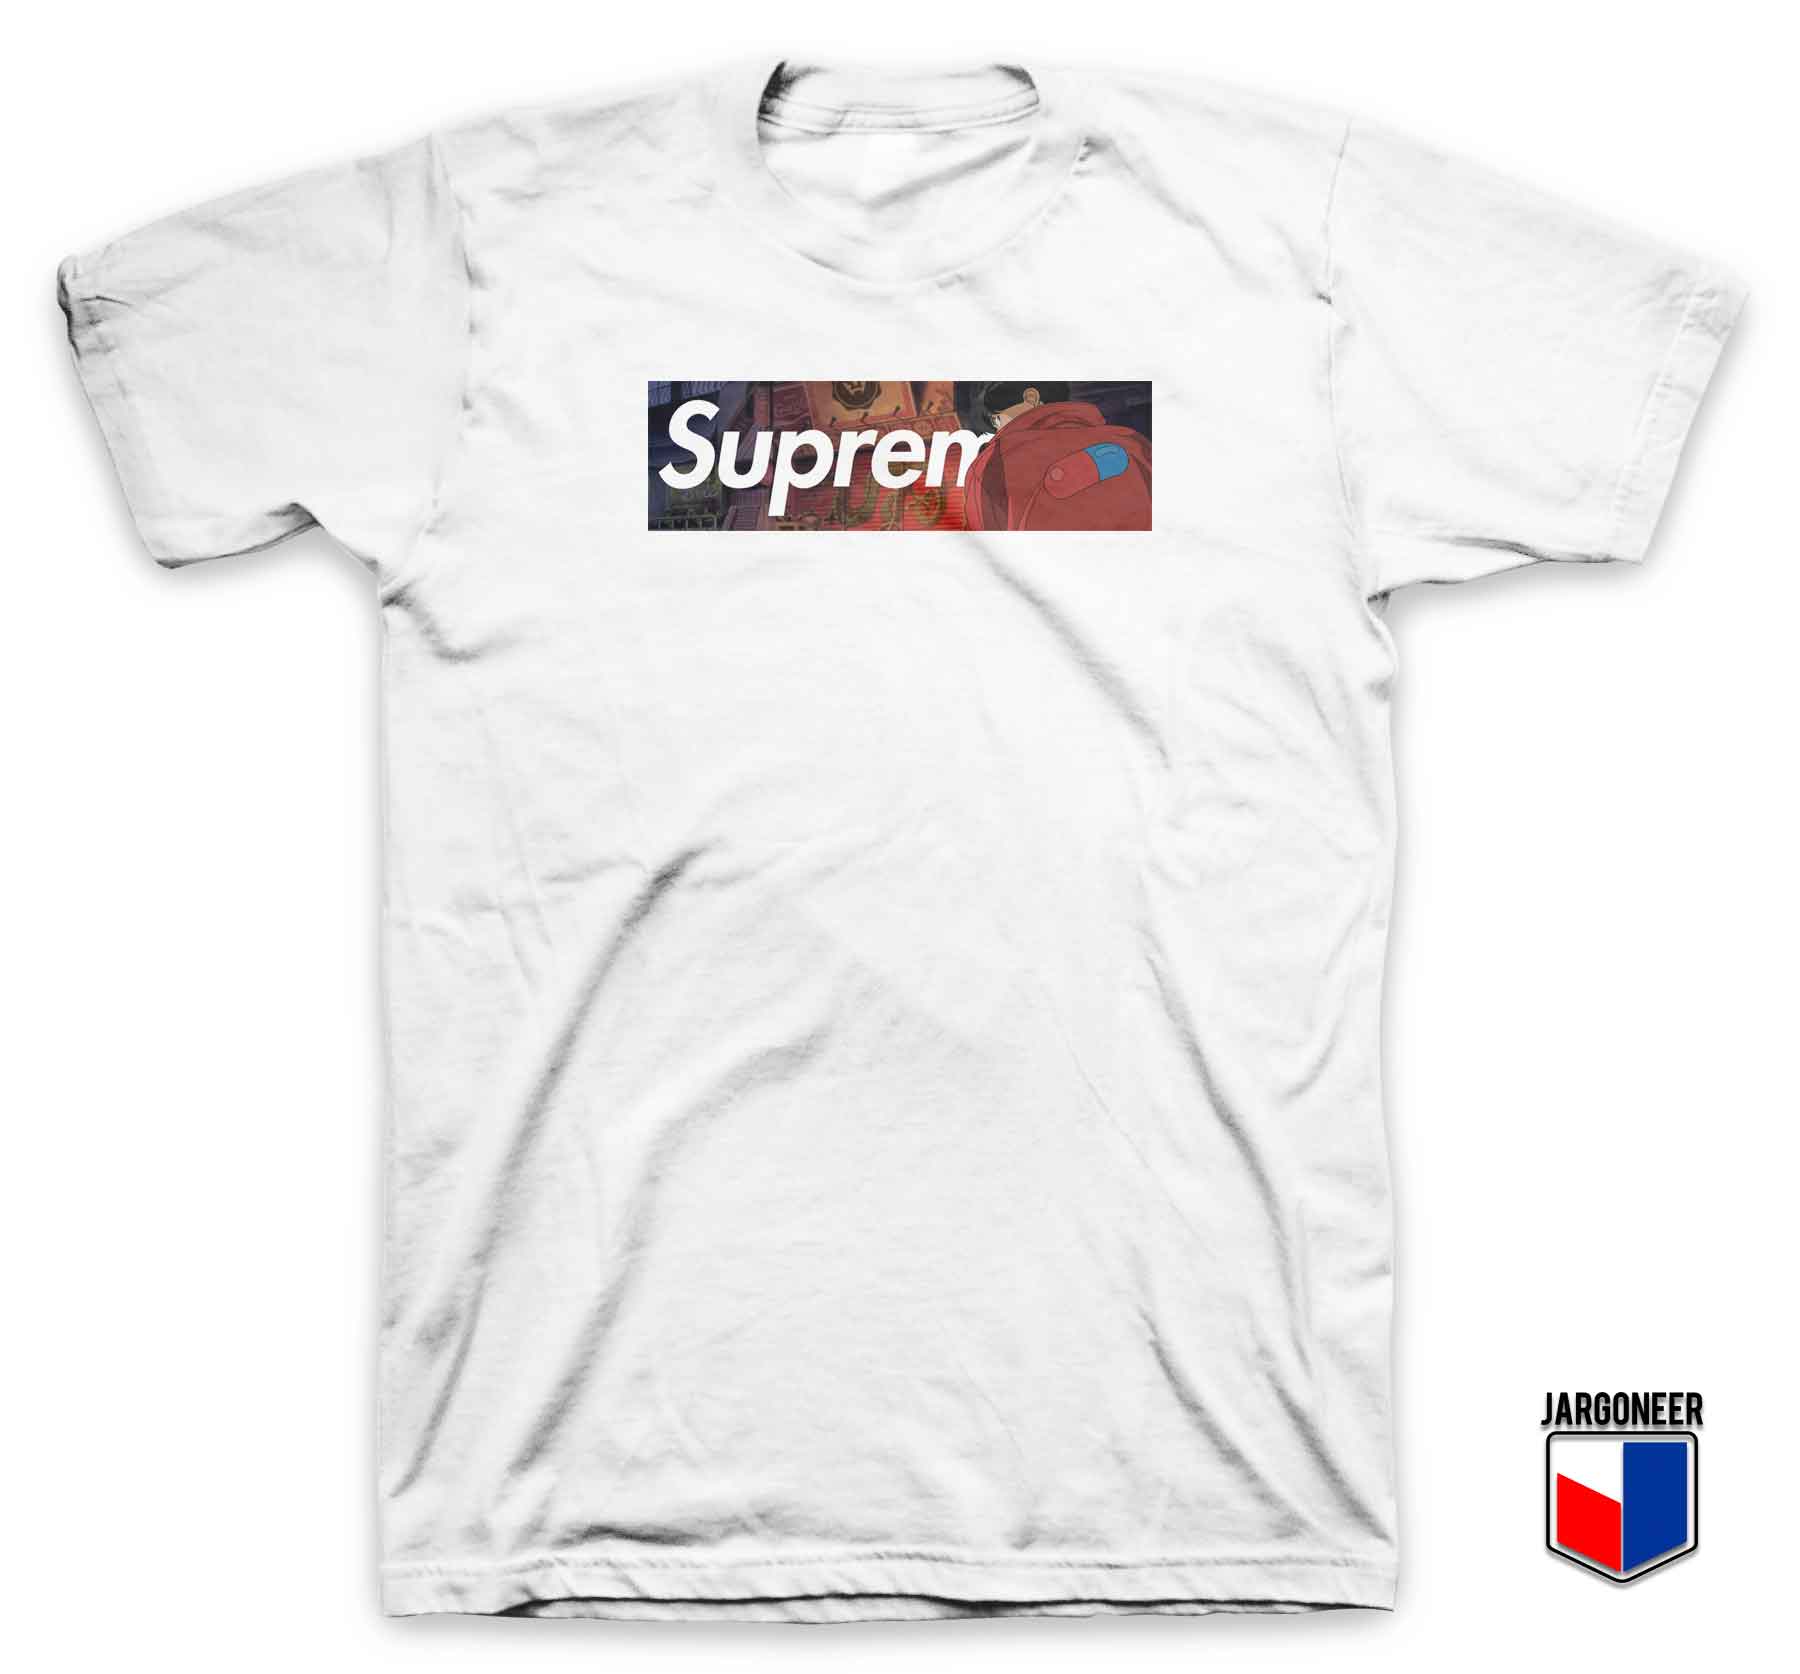 Supreme X Akira - Shop Unique Graphic Cool Shirt Designs